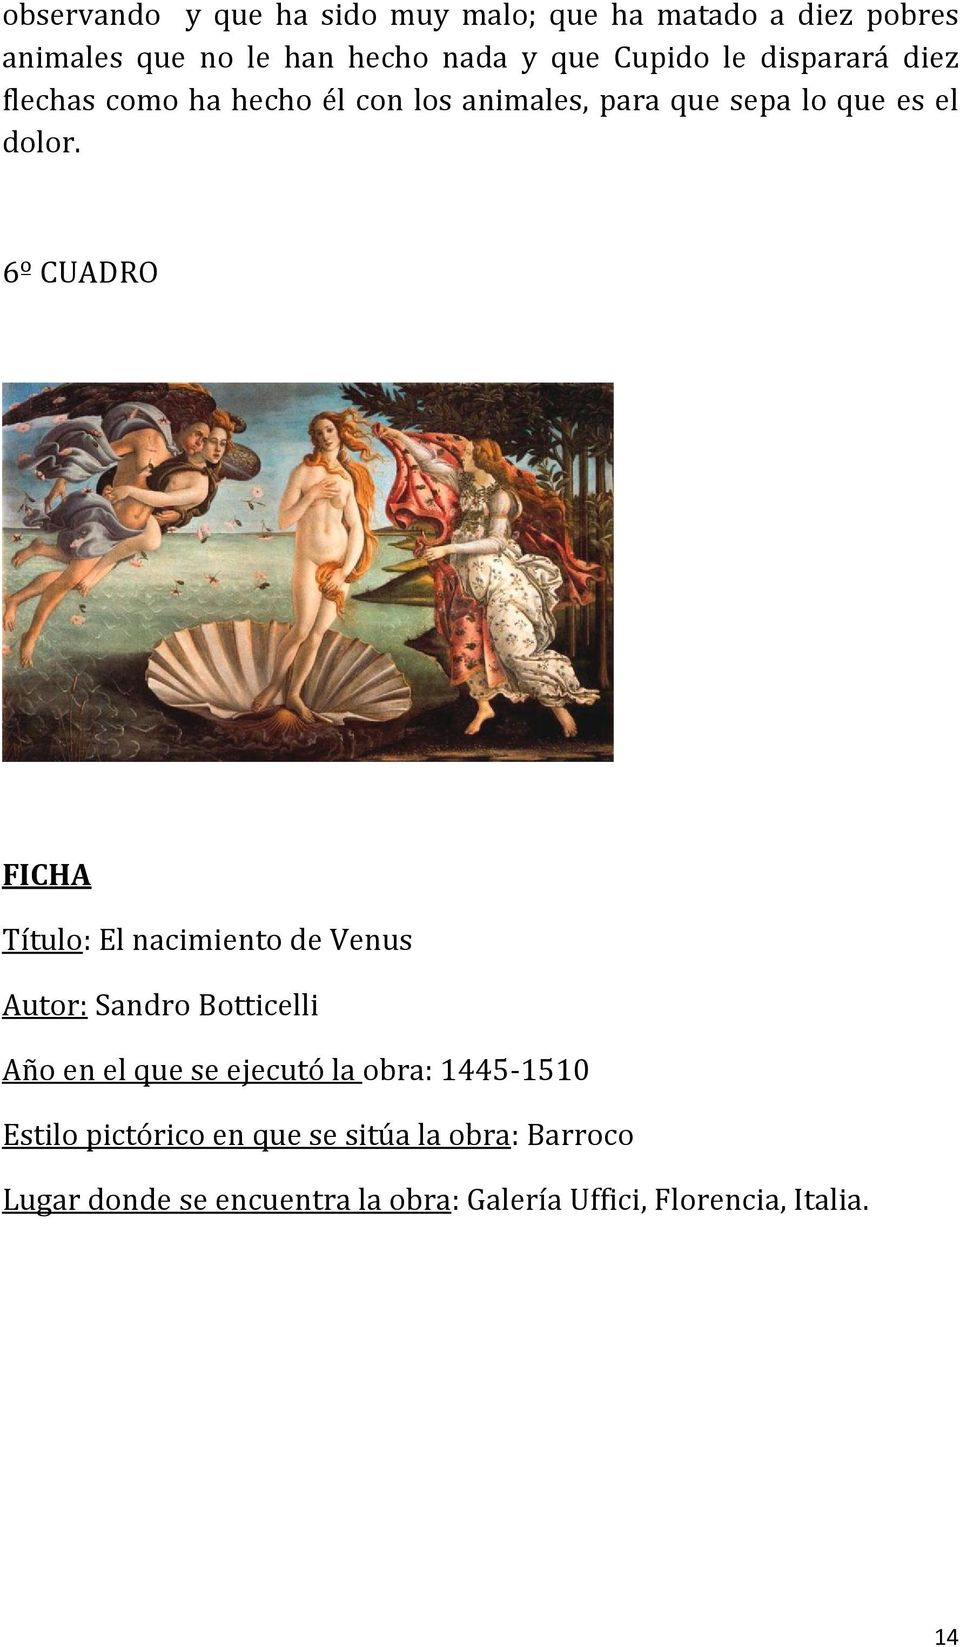 6º CUADRO FICHA Título: El nacimiento de Venus Autor: Sandro Botticelli Año en el que se ejecutó la obra: